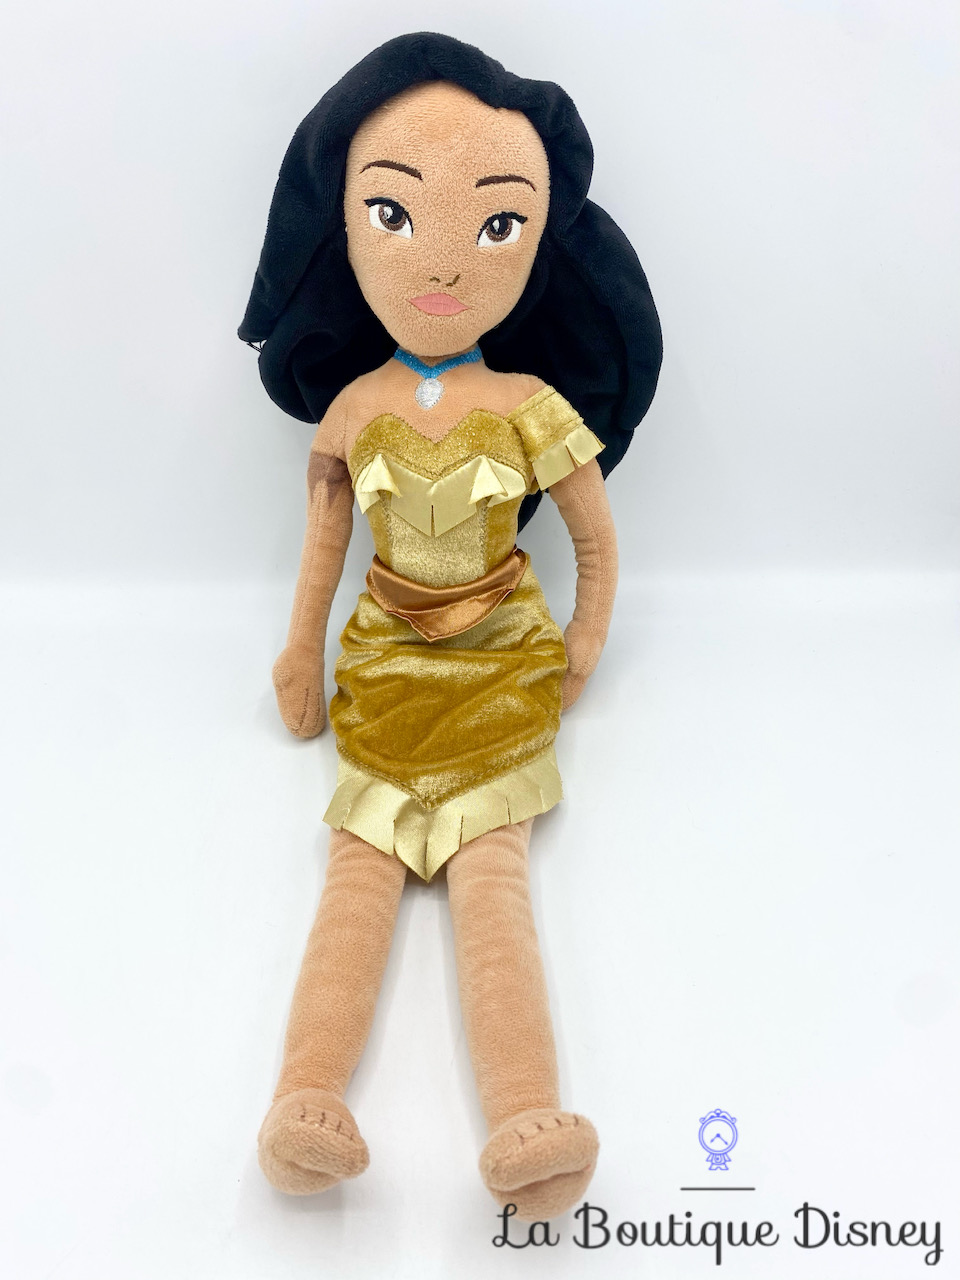 Poupée chiffon Pocahontas Disney Store peluche princesse indienne 51 cm